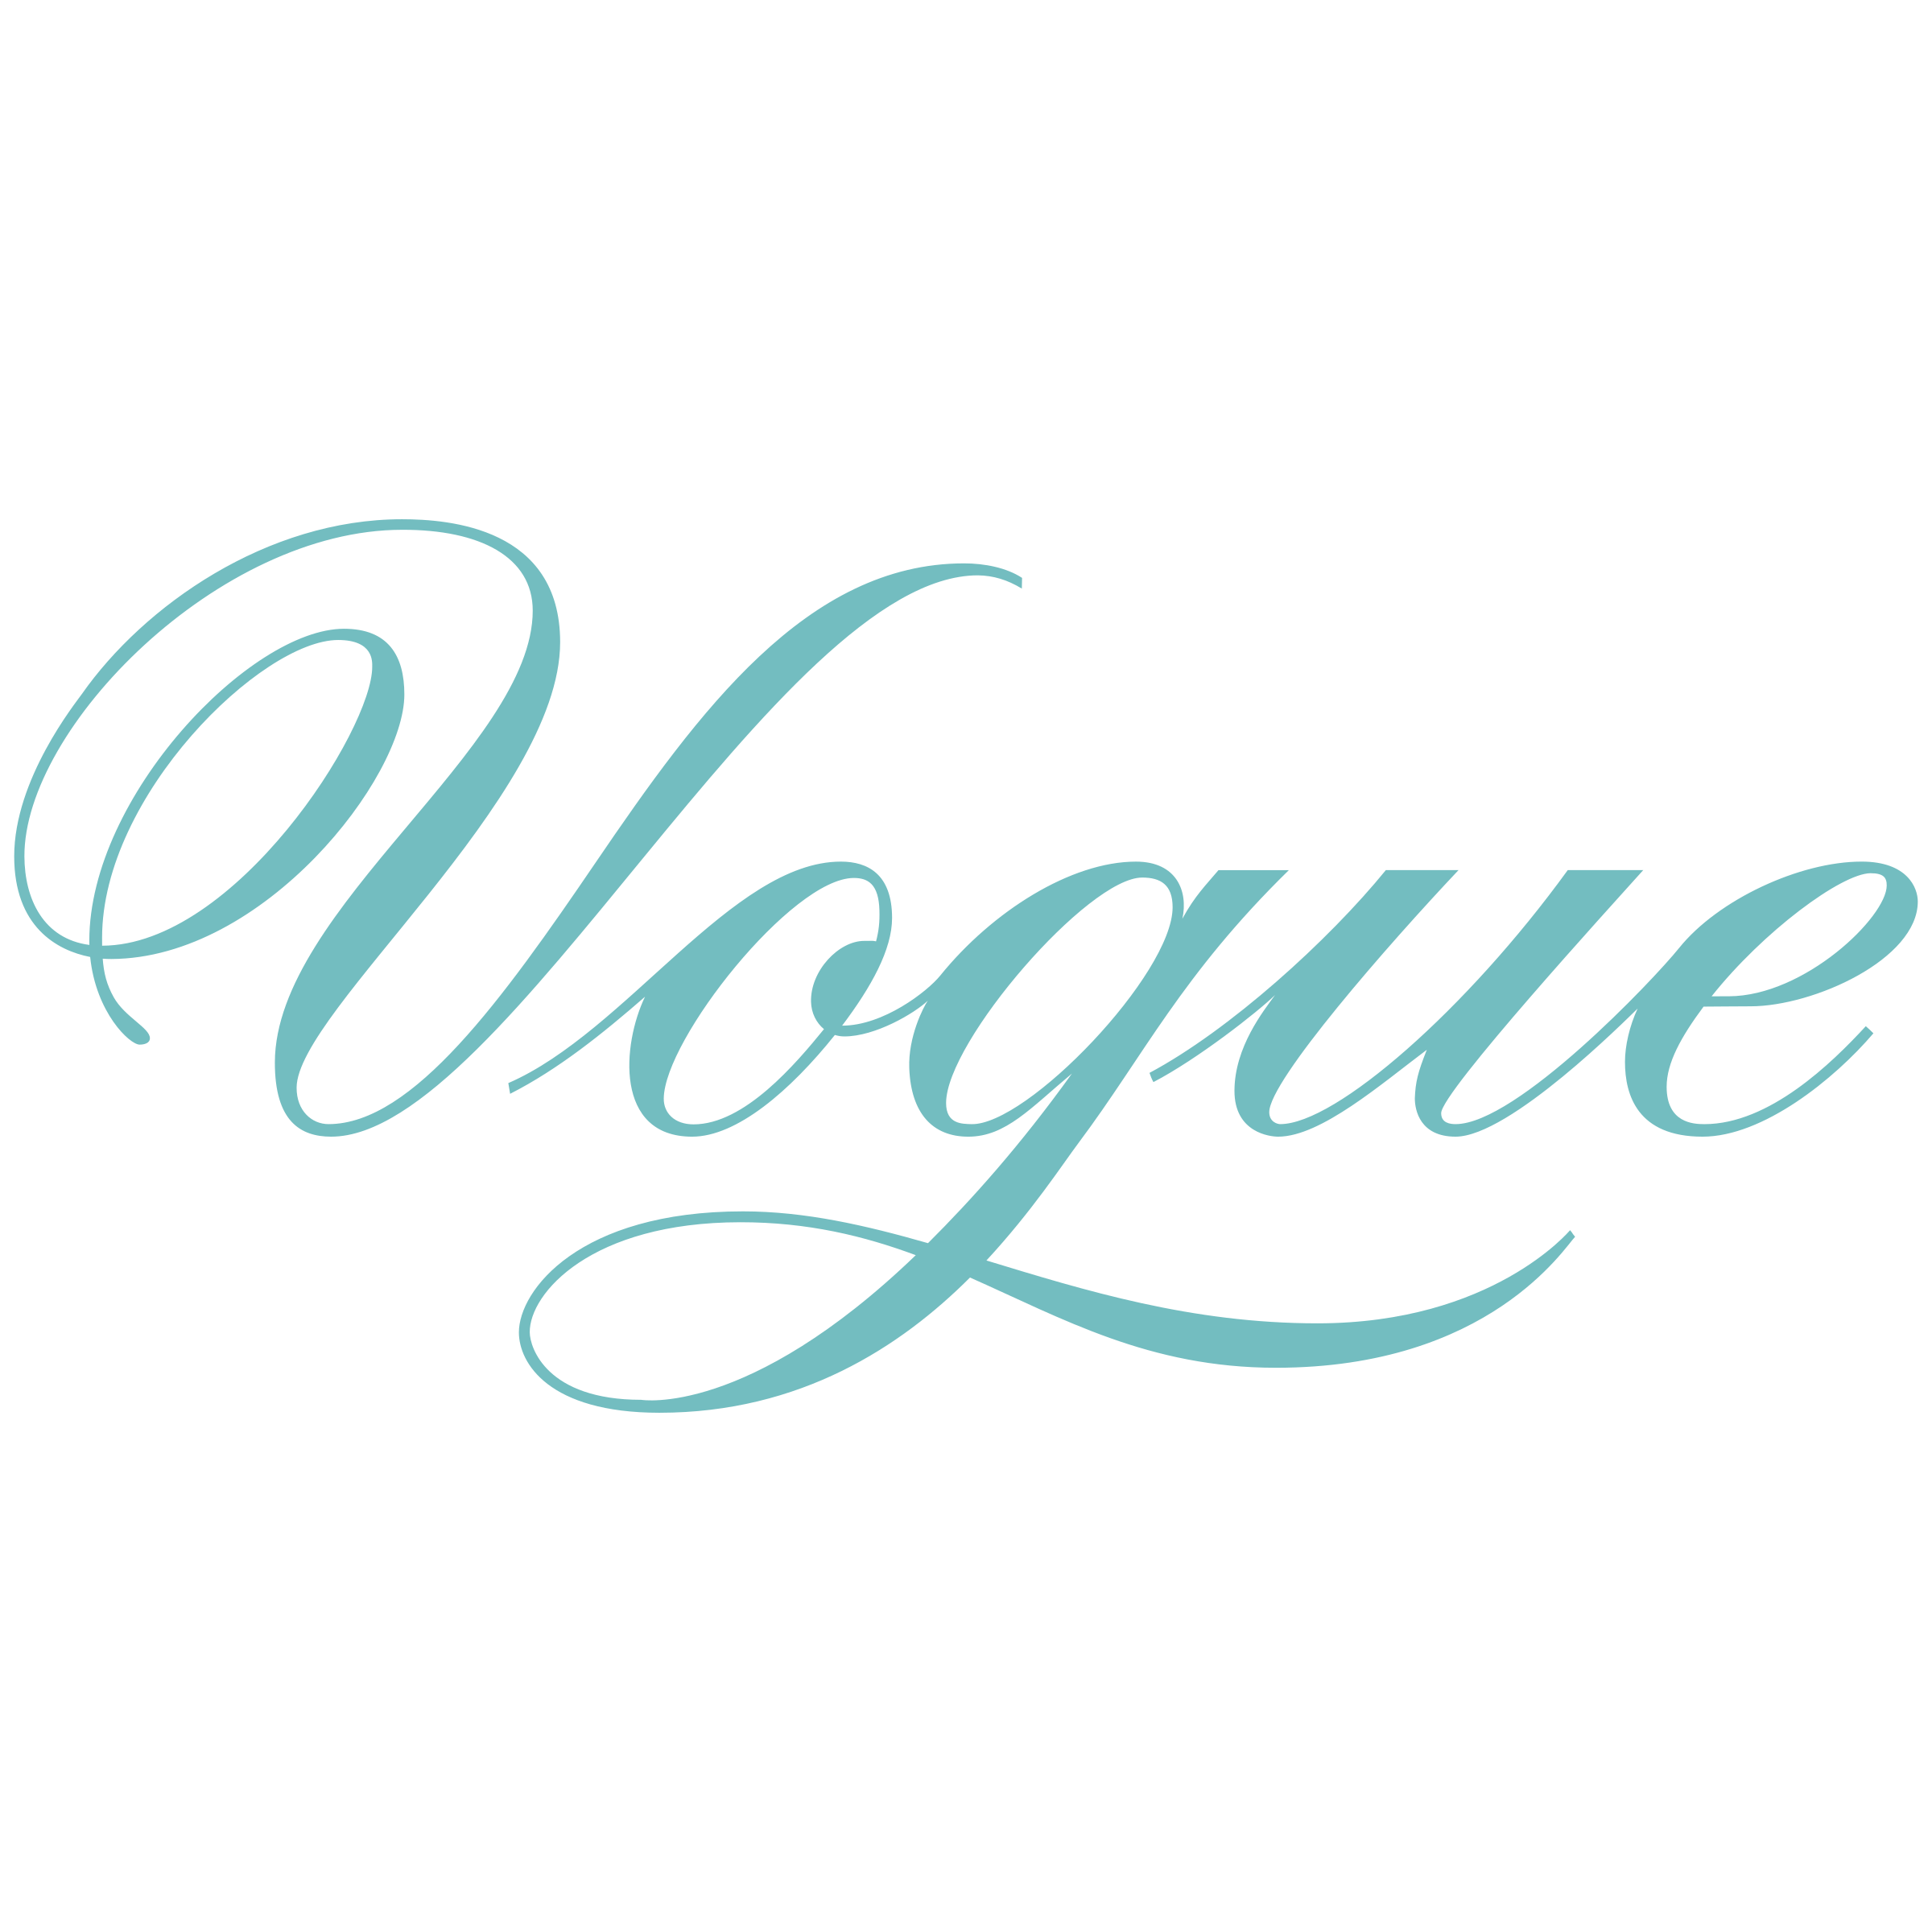 Vogue Logo Vector